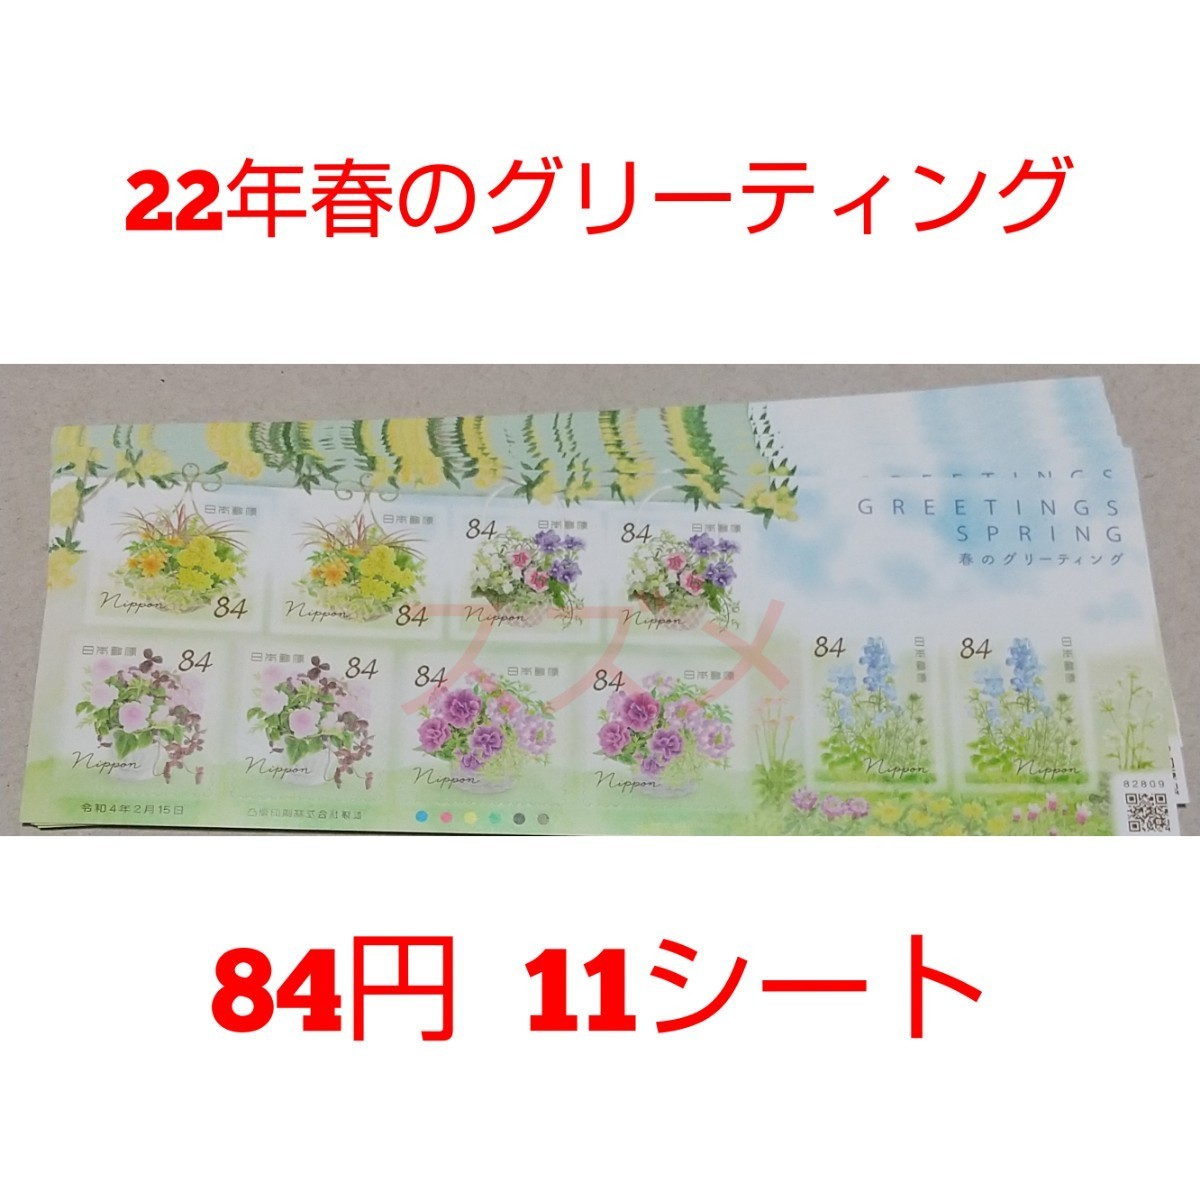 22年春のグリーティング 84円×10枚 11シート 9240円分  シール式切手 記念切手